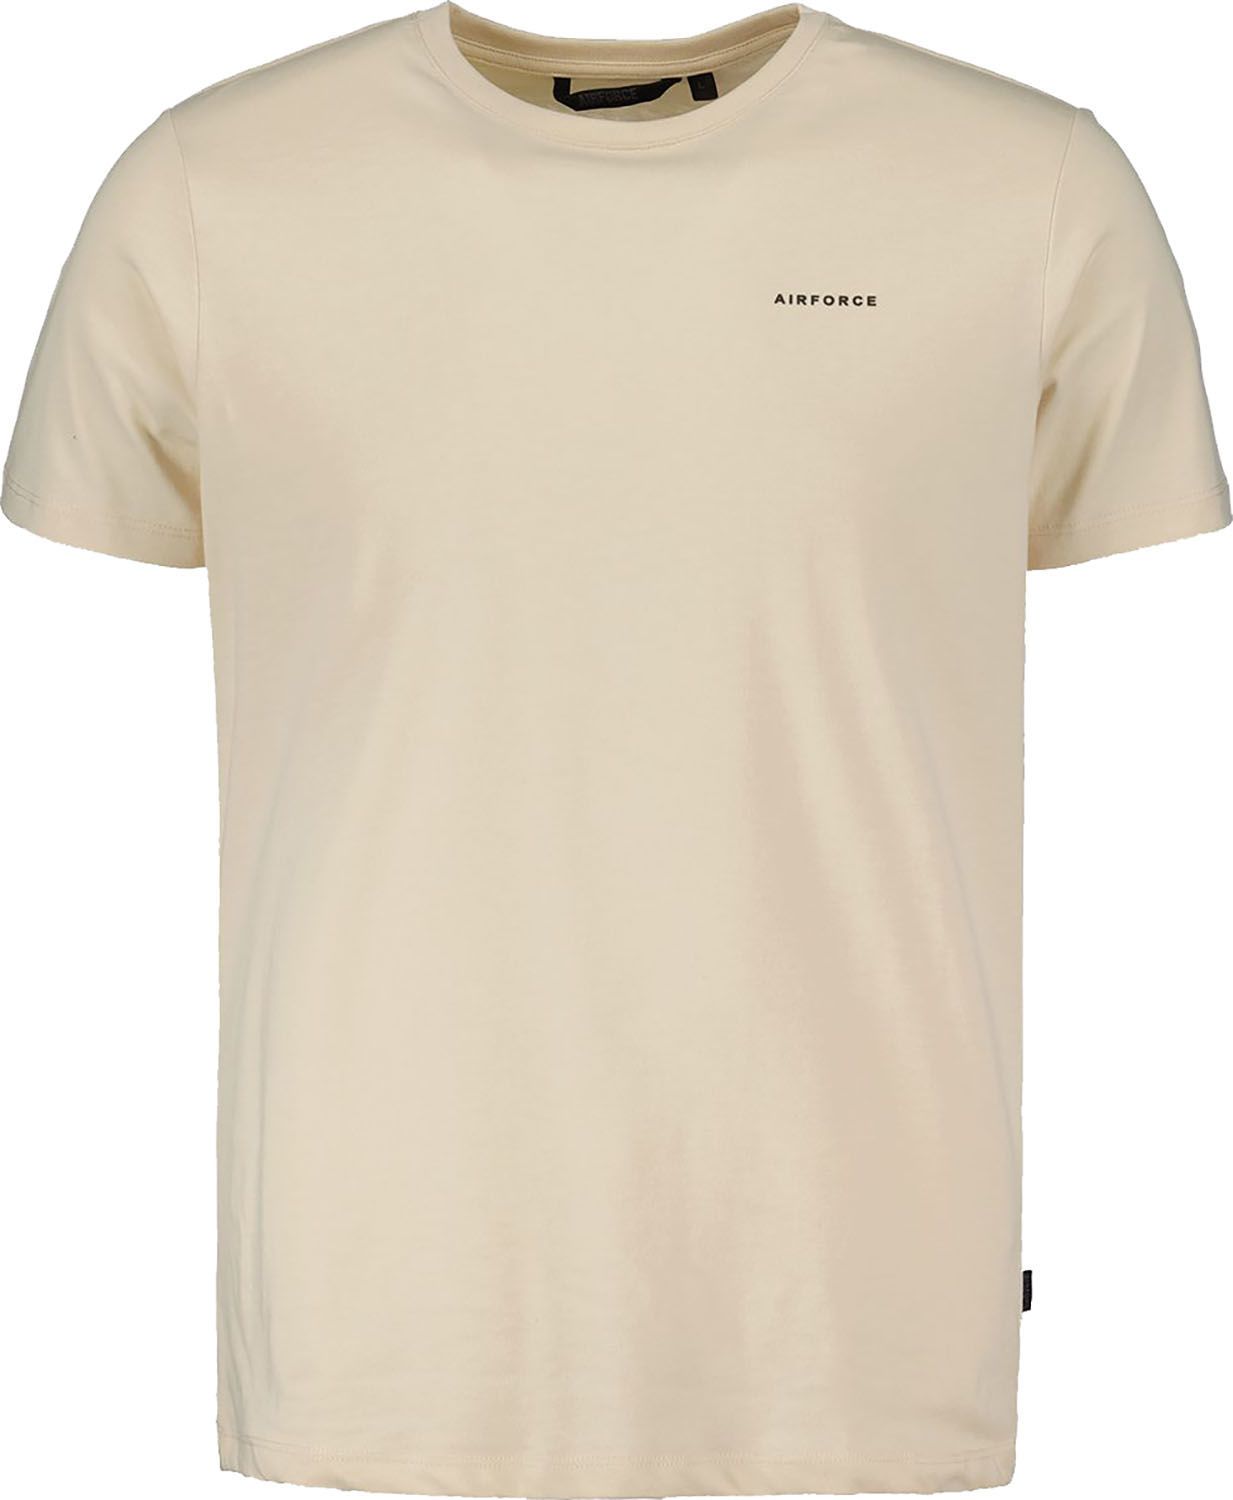 Airforce T-Shirt Creme